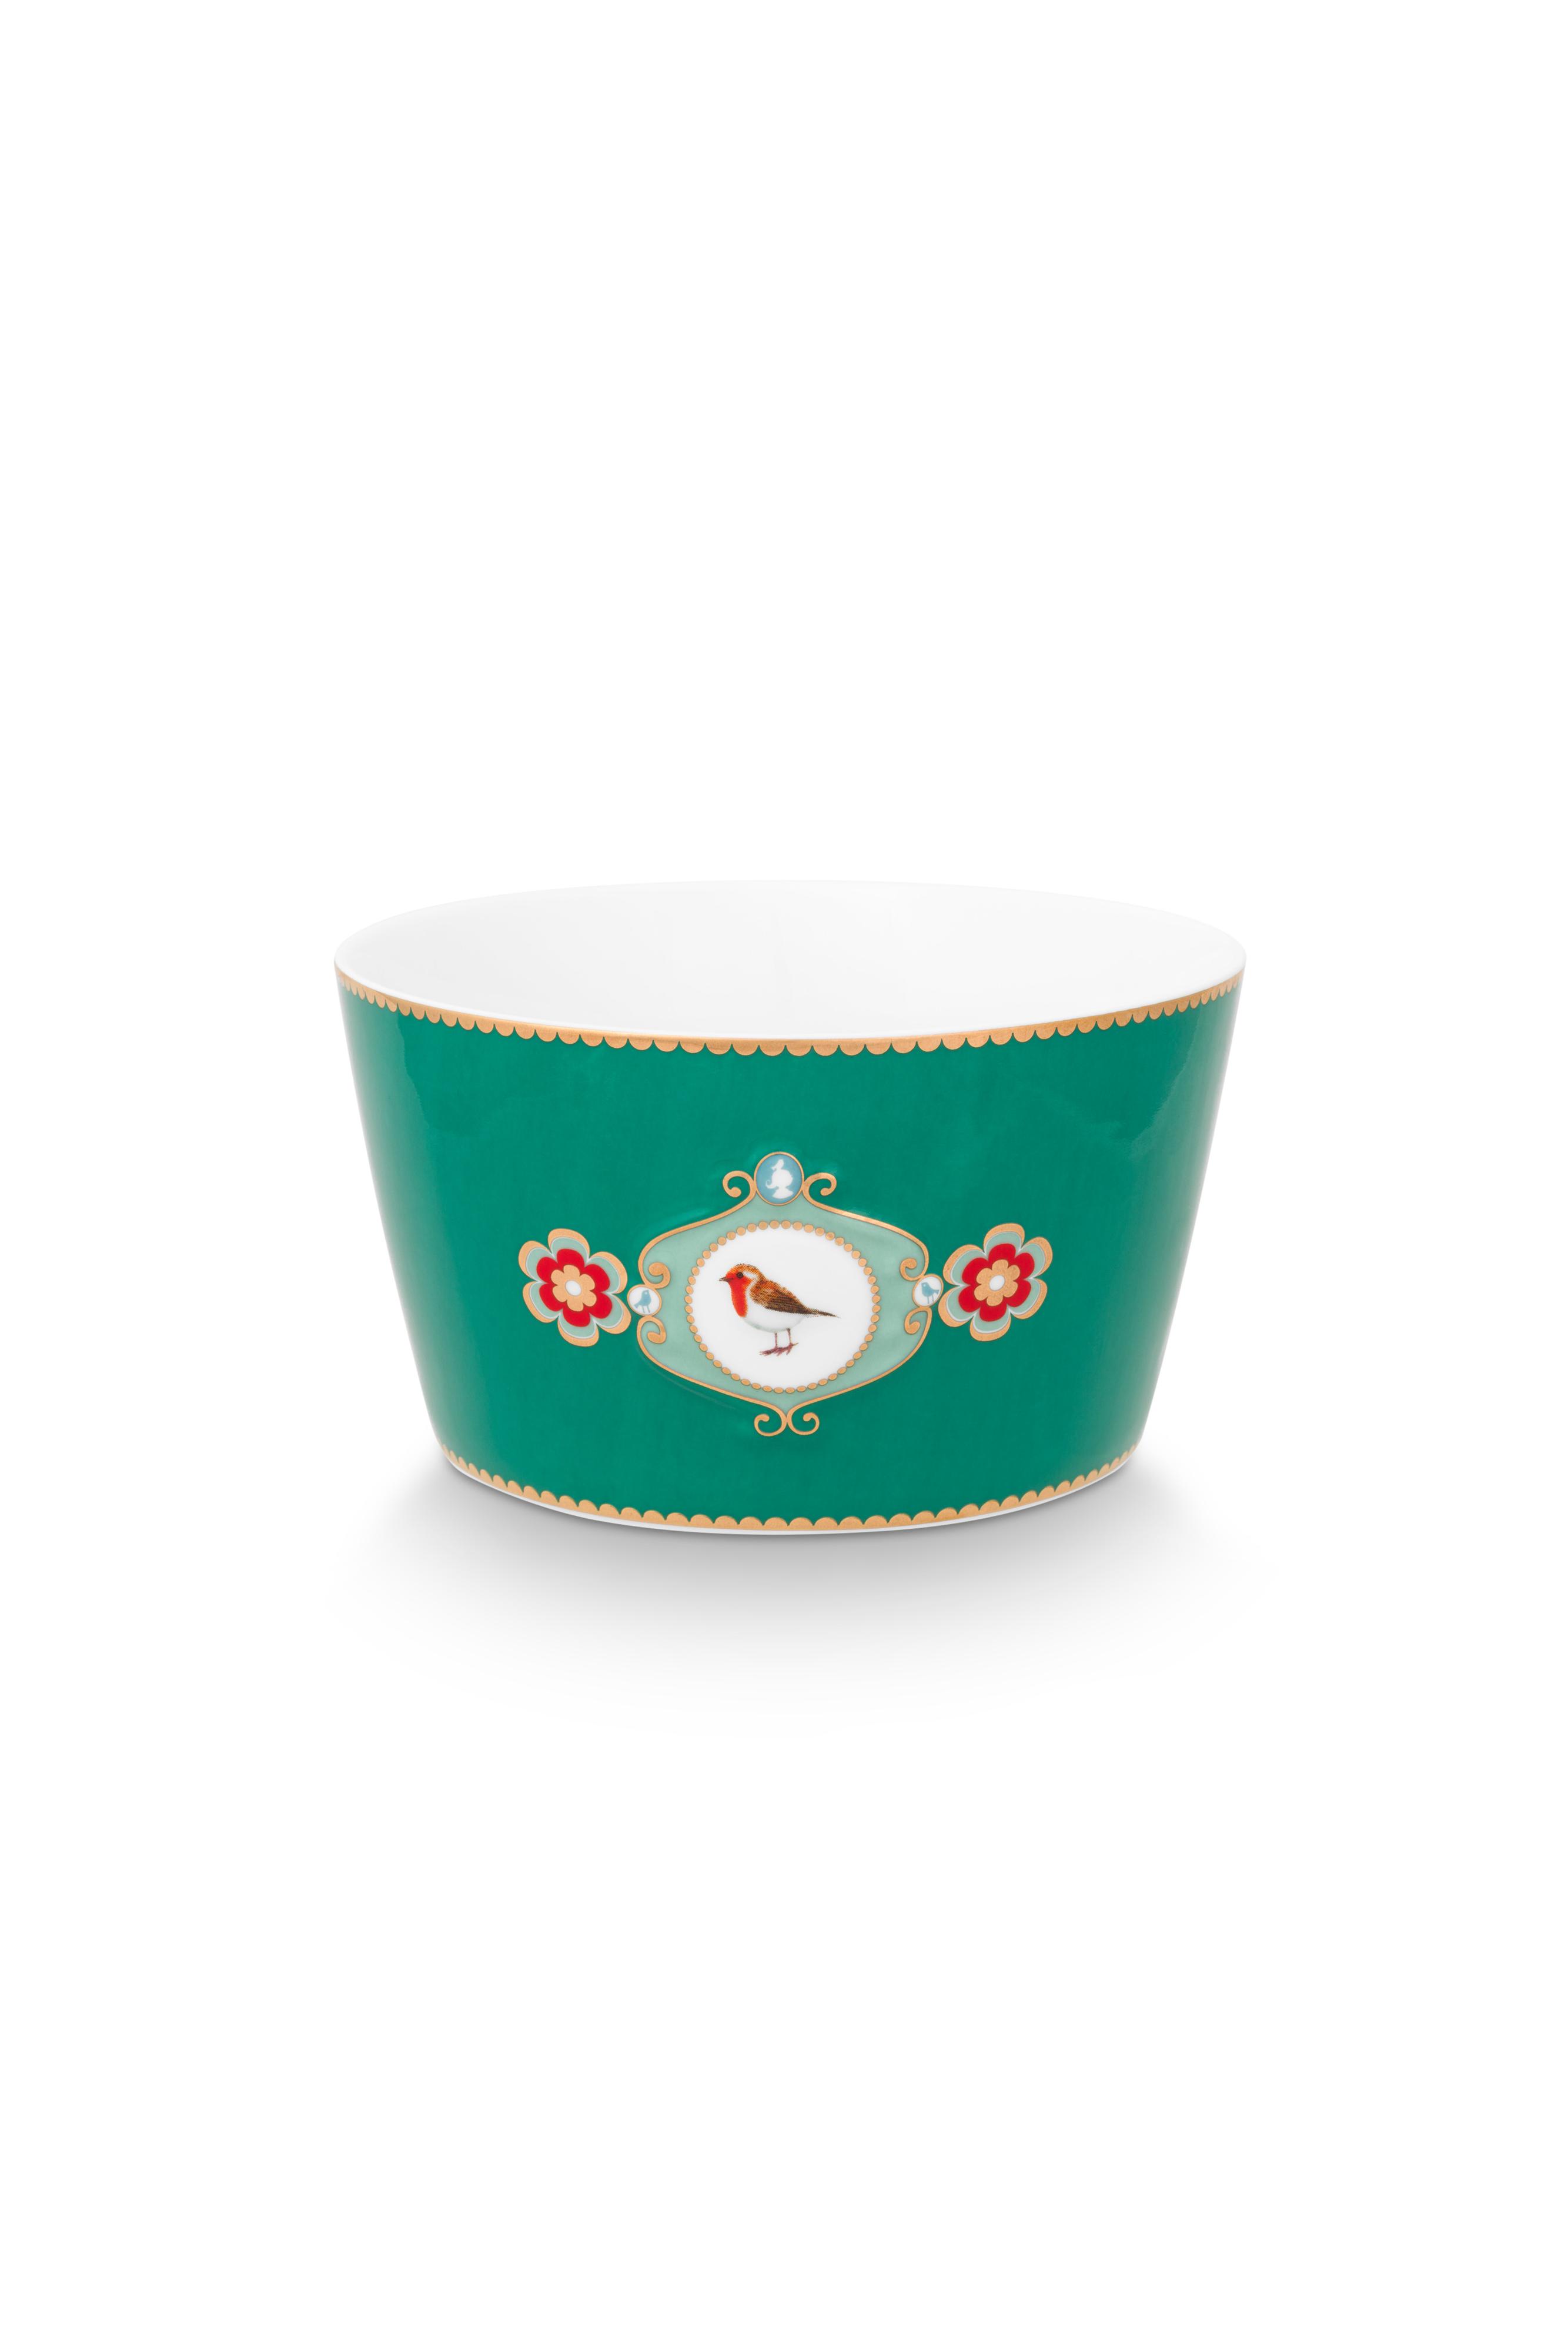 Bowl Love Birds Medallion Emerald 15cm Gift